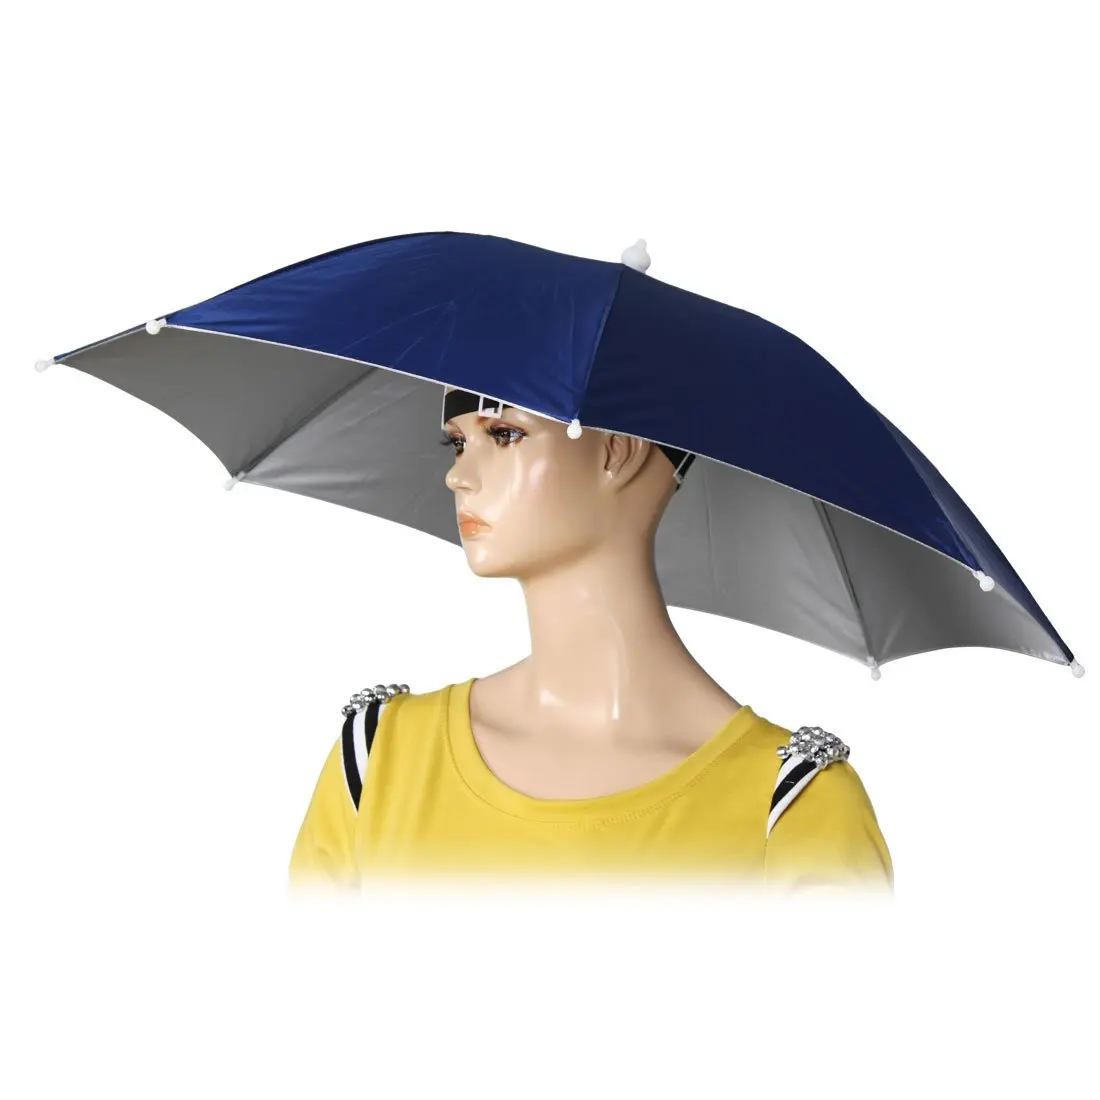 26 "diamètre élastique bandeau pêche chapeaux parapluie chapeau bleu foncé